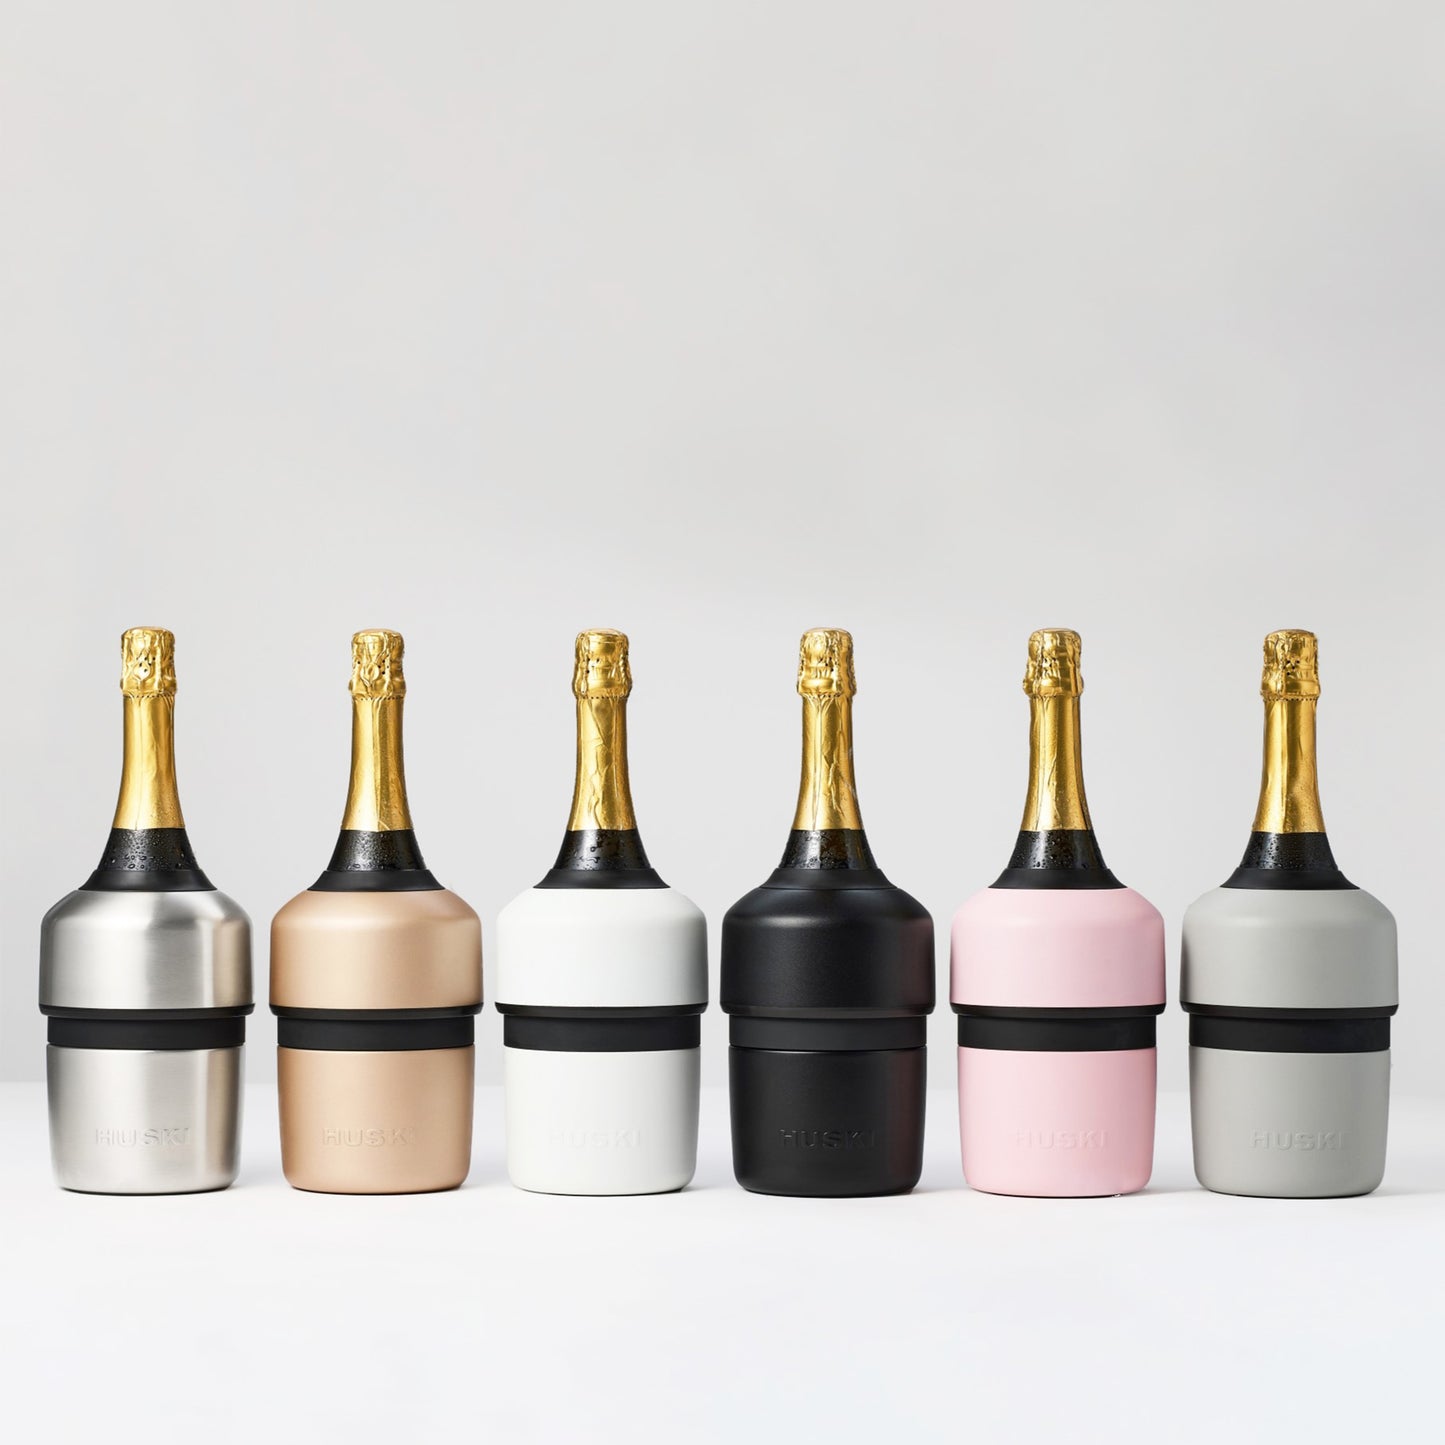 PRE-ORDER: Huski Champagne Cooler